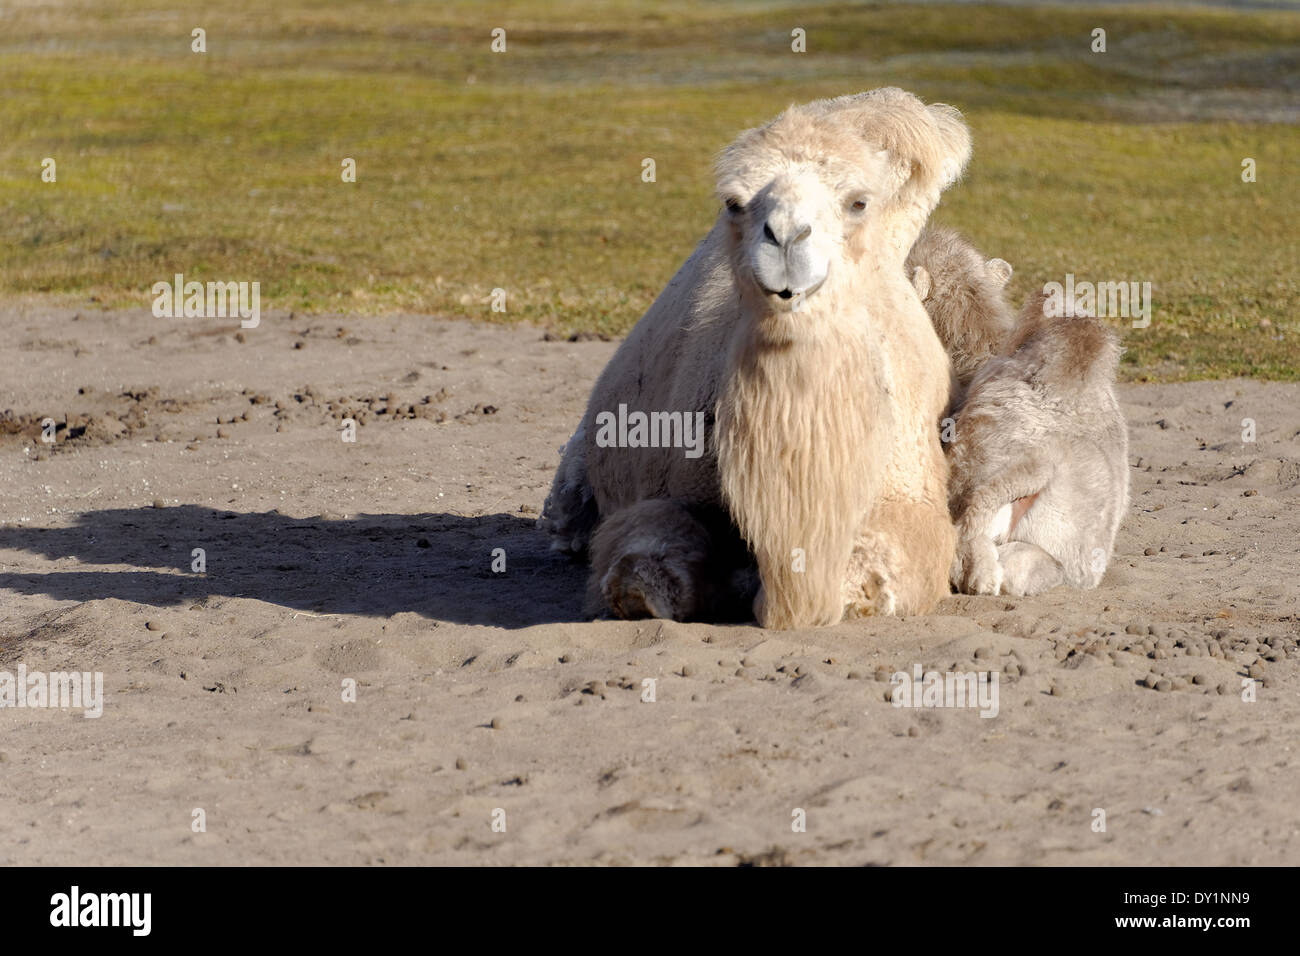 Camello bactriano (Camelus bactrianus) es enorme, incluso-vetado de ungulados nativos de las estepas del Asia Central. Foto de stock